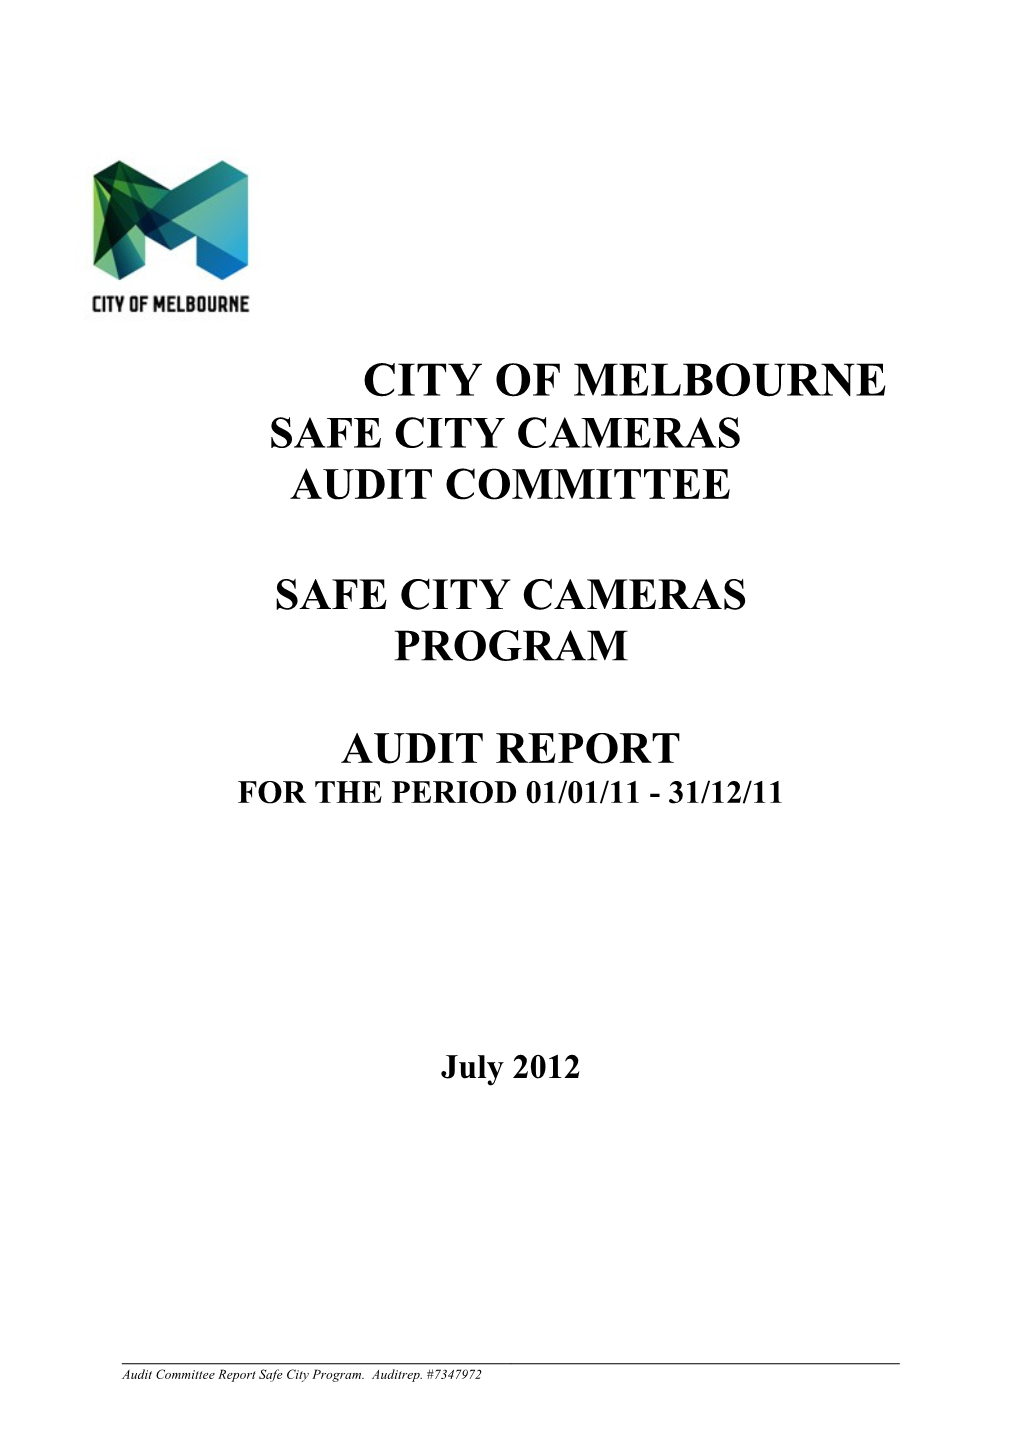 Safe City Cameras Audit Report 1/1/2011 - 31/12/2011